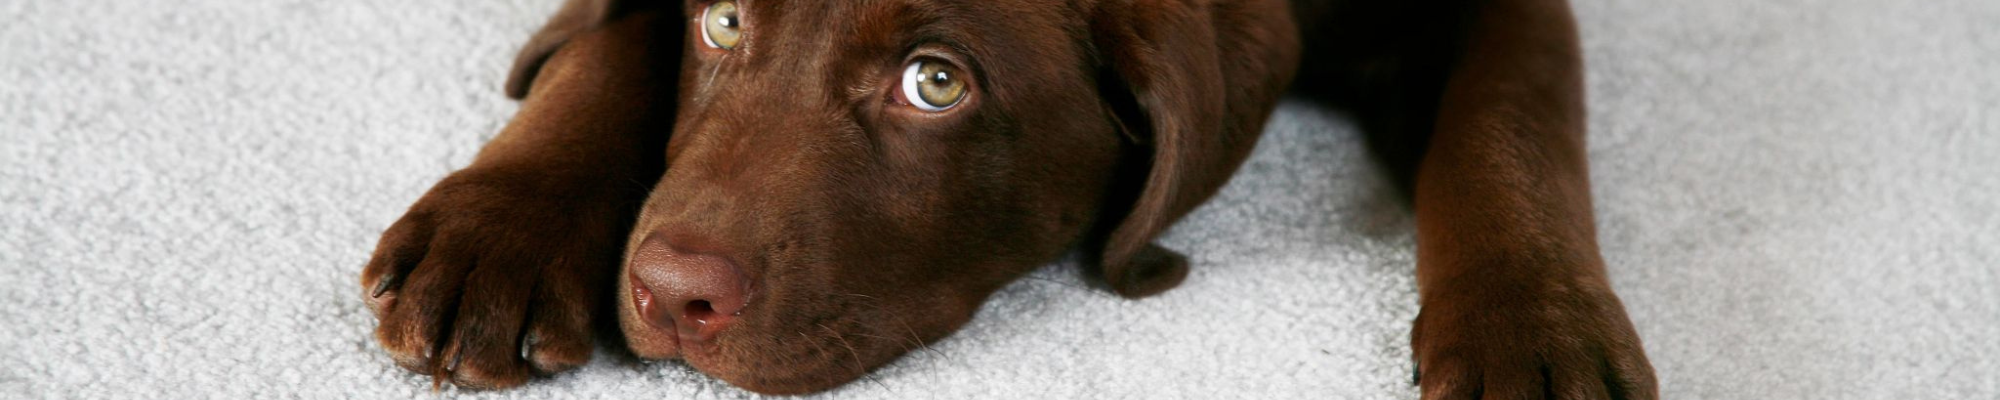 Brown dog on carpet